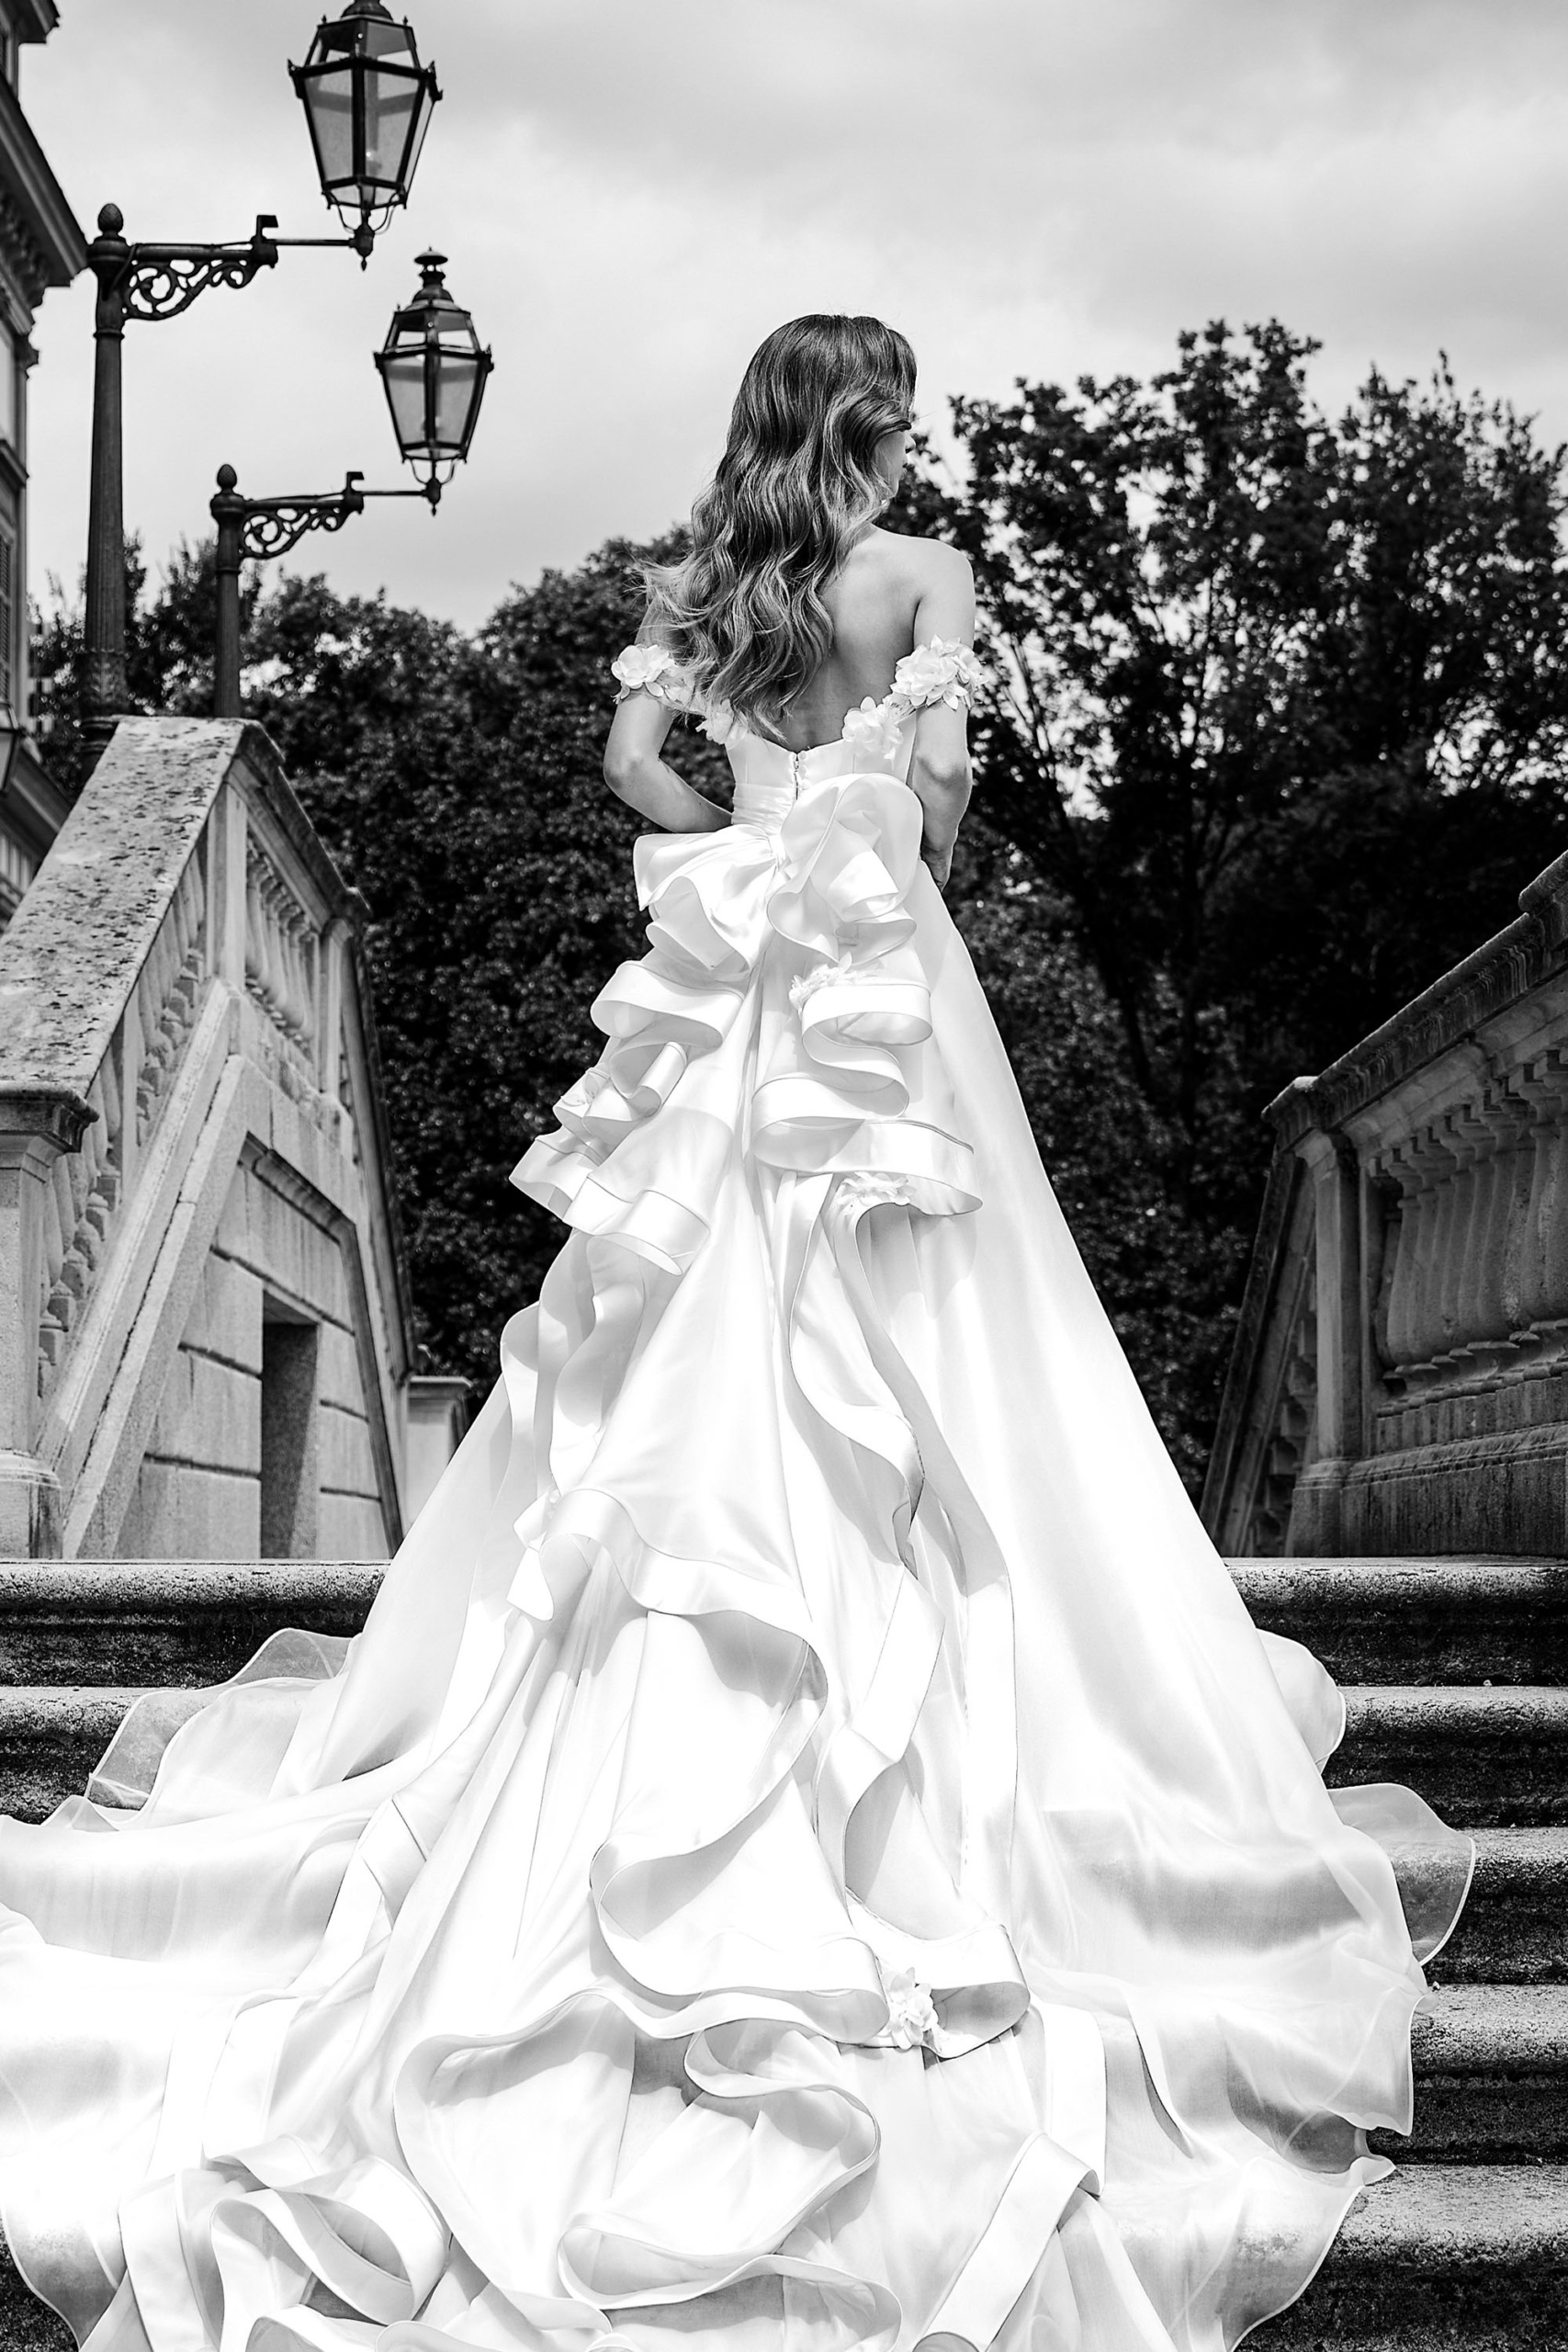 Milano Sposa: Vogue Style tra Arte e Moda - Realizza il Tuo Sogno con un Vestito da Sposa Unico - Consigli e Tendenze per il Tuo Matrimonio